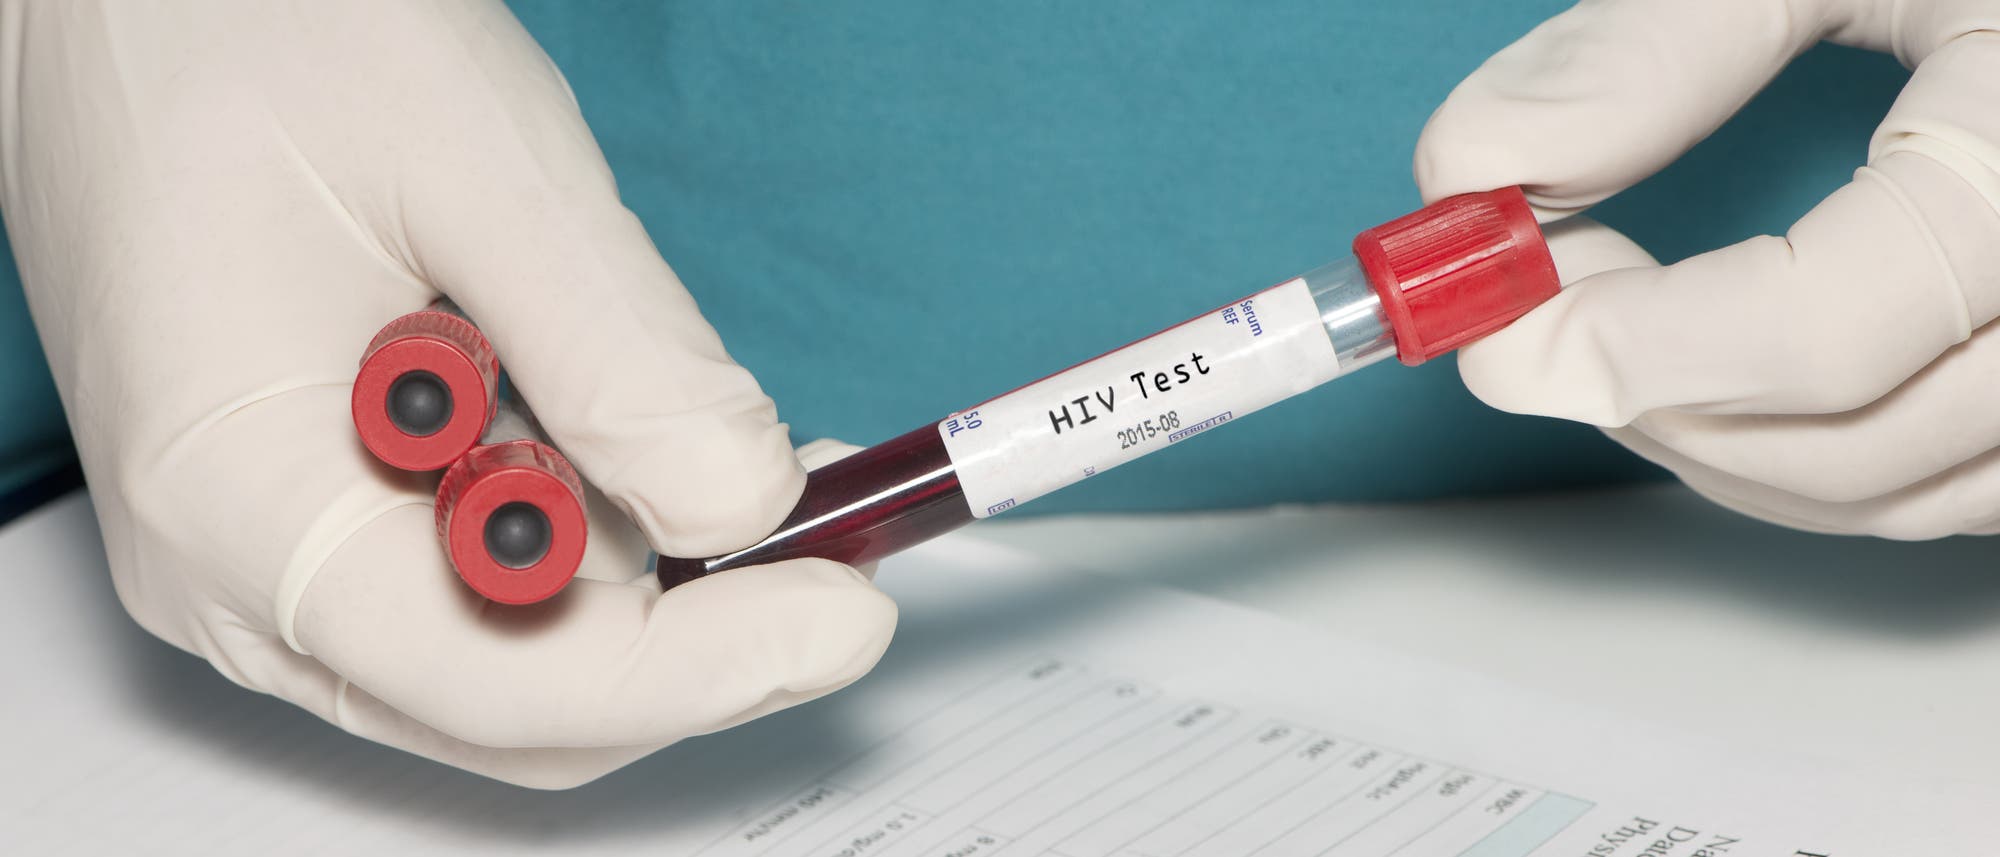 Zwei Hände in Handschuhen spielen mit mehrere Ampullen voll Blut herum. Auf einer davon steht "HIV-Test". Mit echten HIV-verdächtigen Blutproben geht man allerdings etwas weniger lässig um.